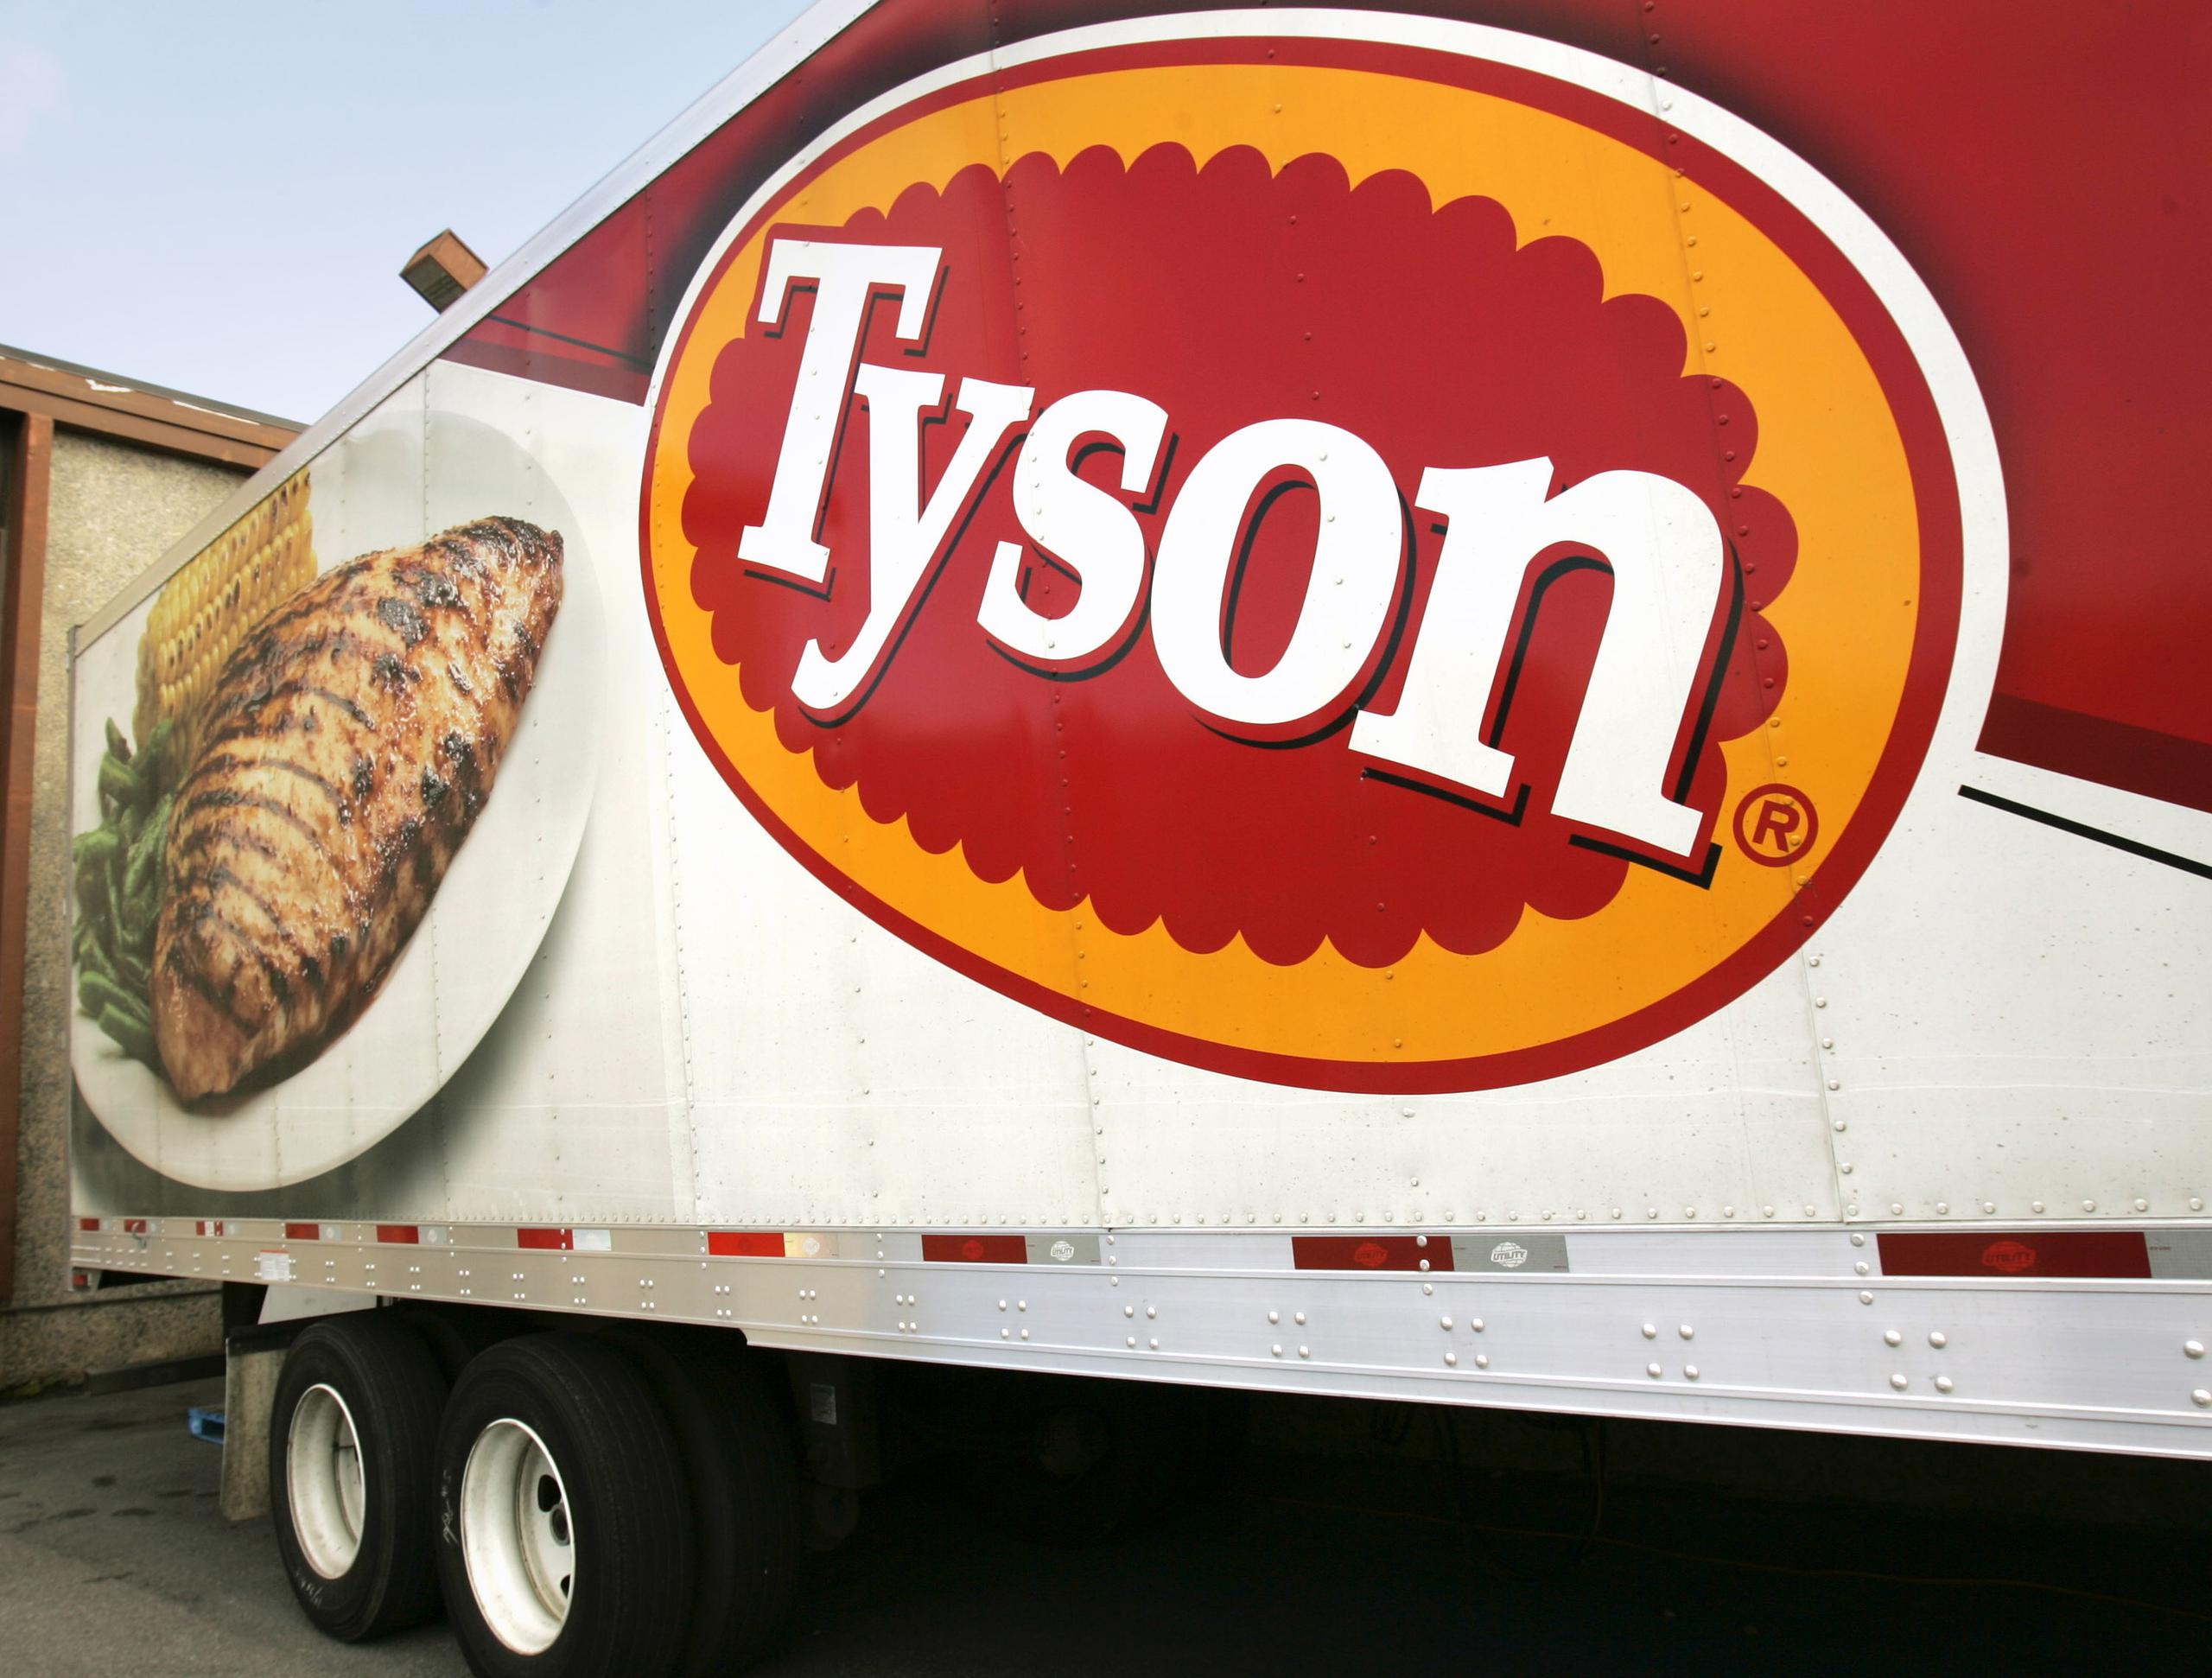 “Al tiempo que las plantas de puerco, res y pollo se ven obligadas a cerrar, incluso por breves periodos, millones de libras de carne desaparecerán de la cadena de suministros”, destacó la empresa Tyson.